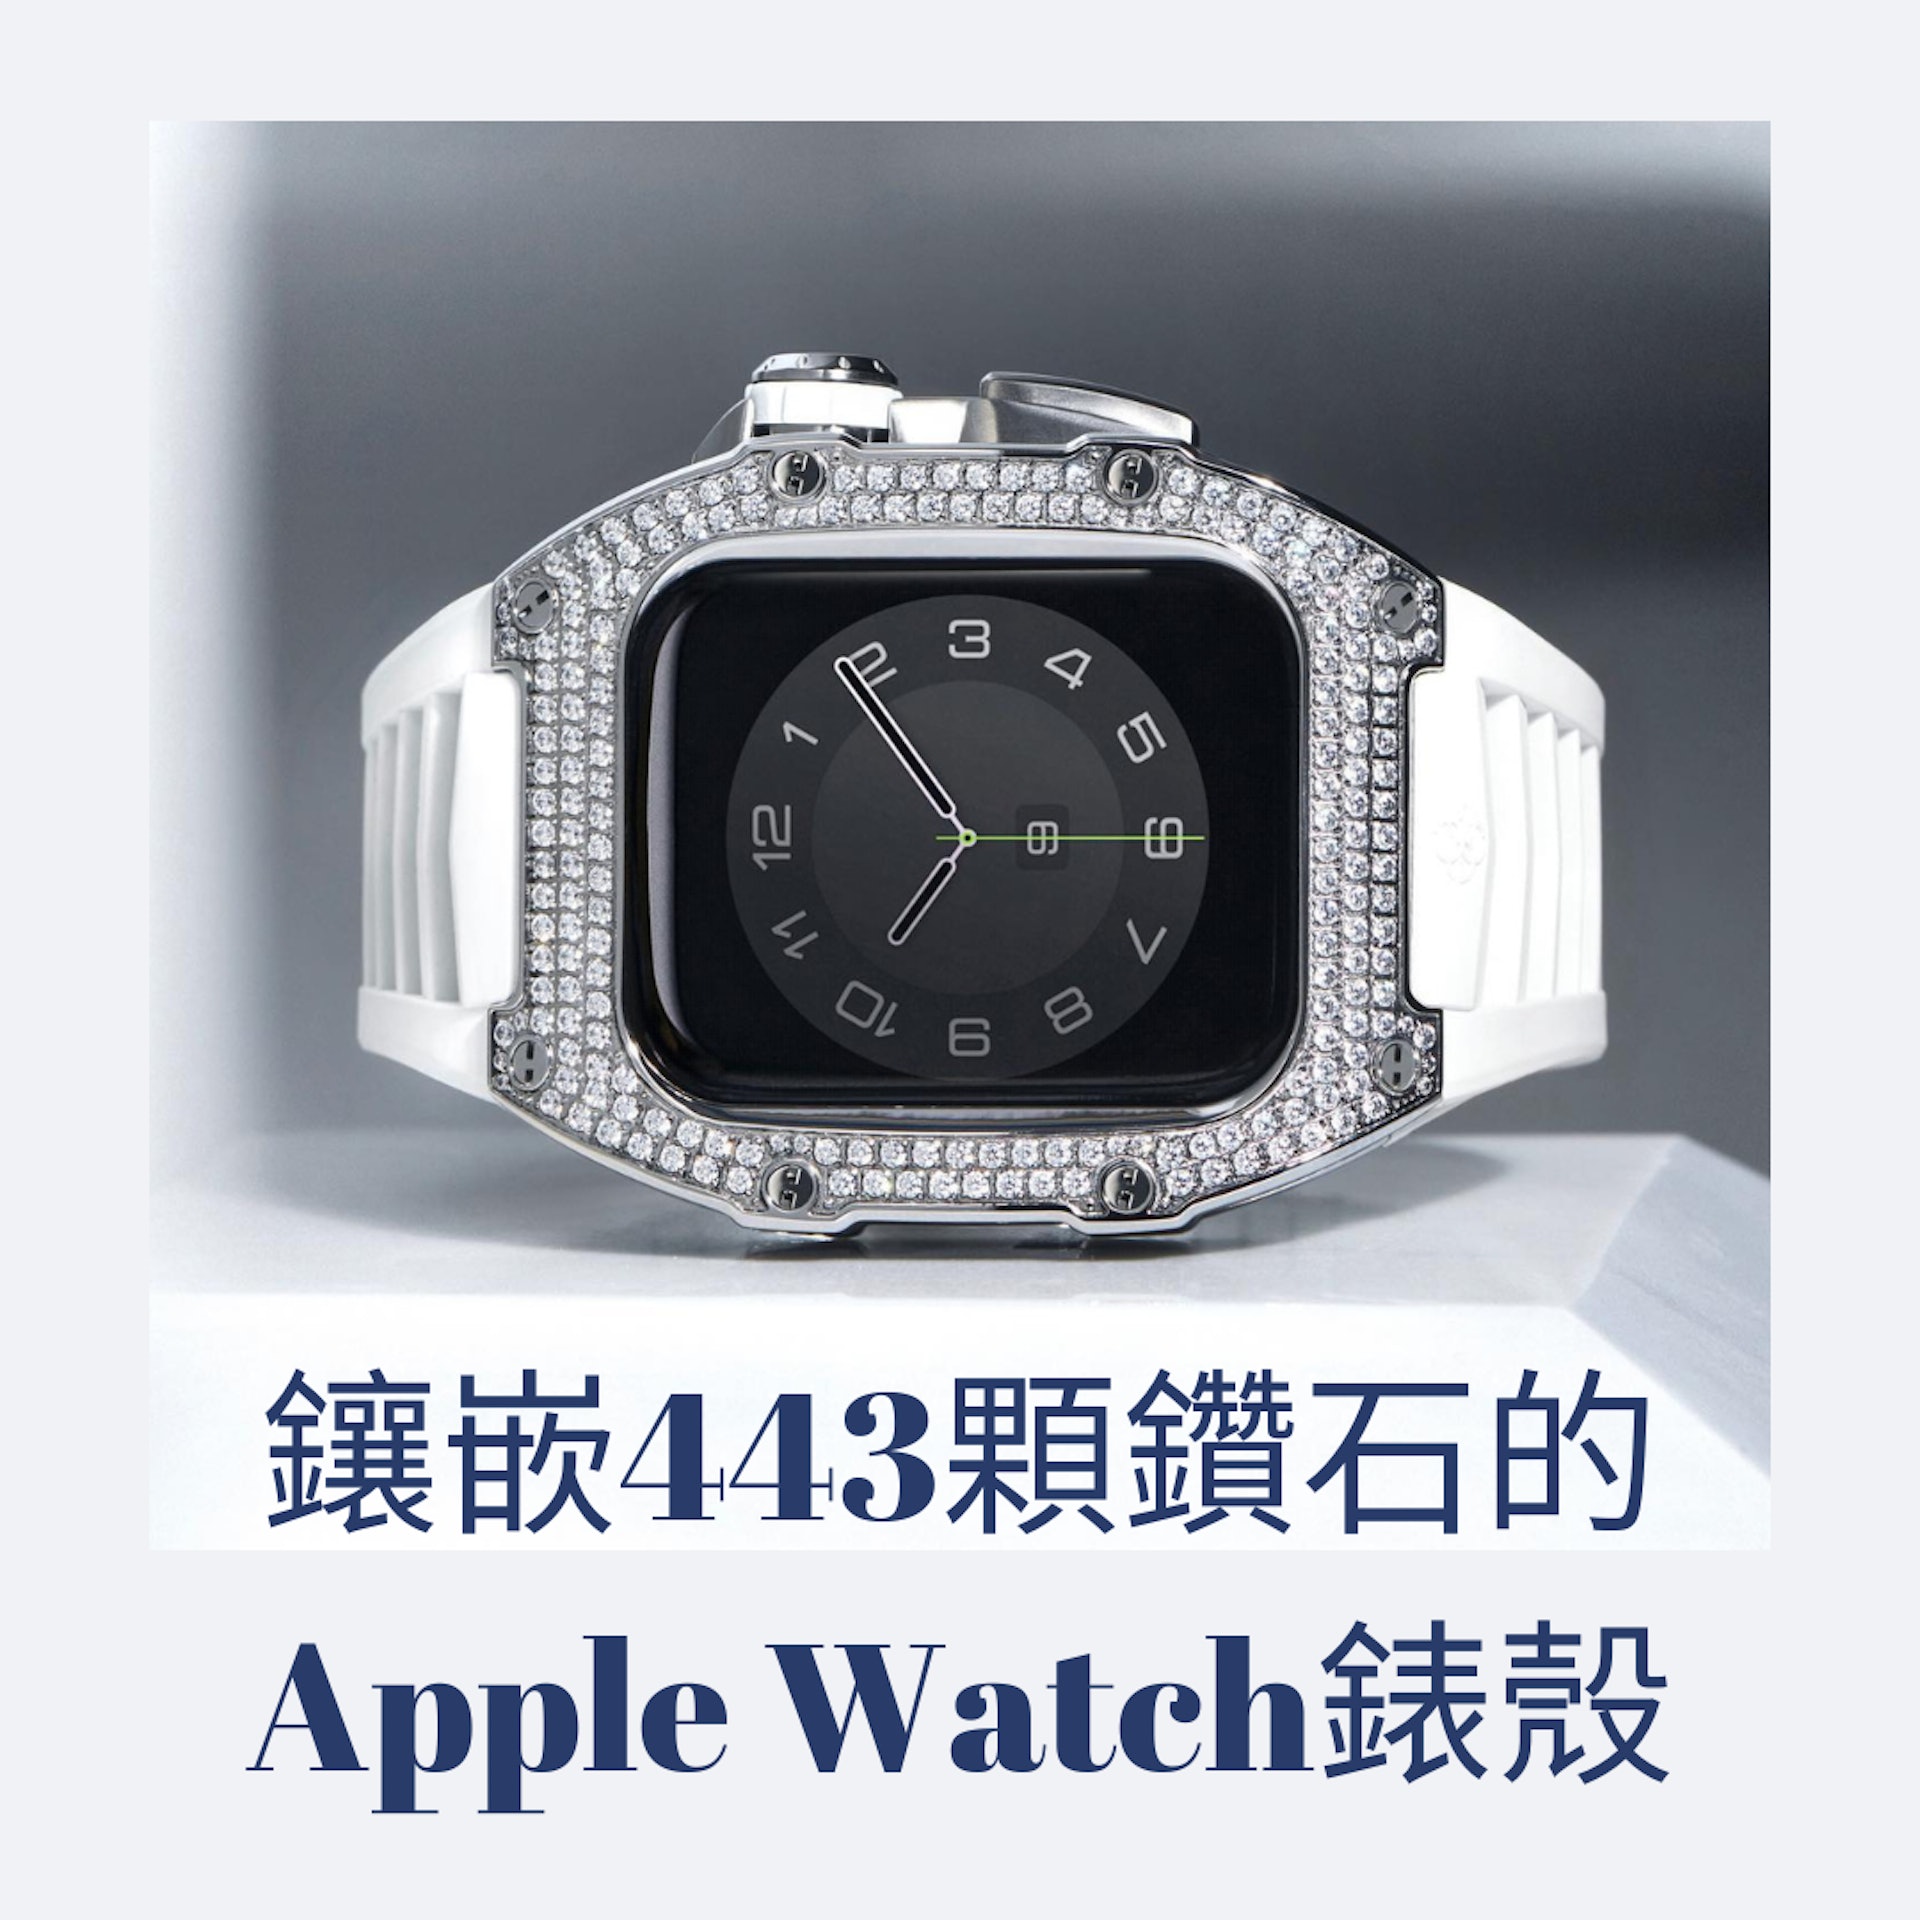 镶嵌443颗钻石的Apple Watch表壳（01制图；Source：Golden Concept）